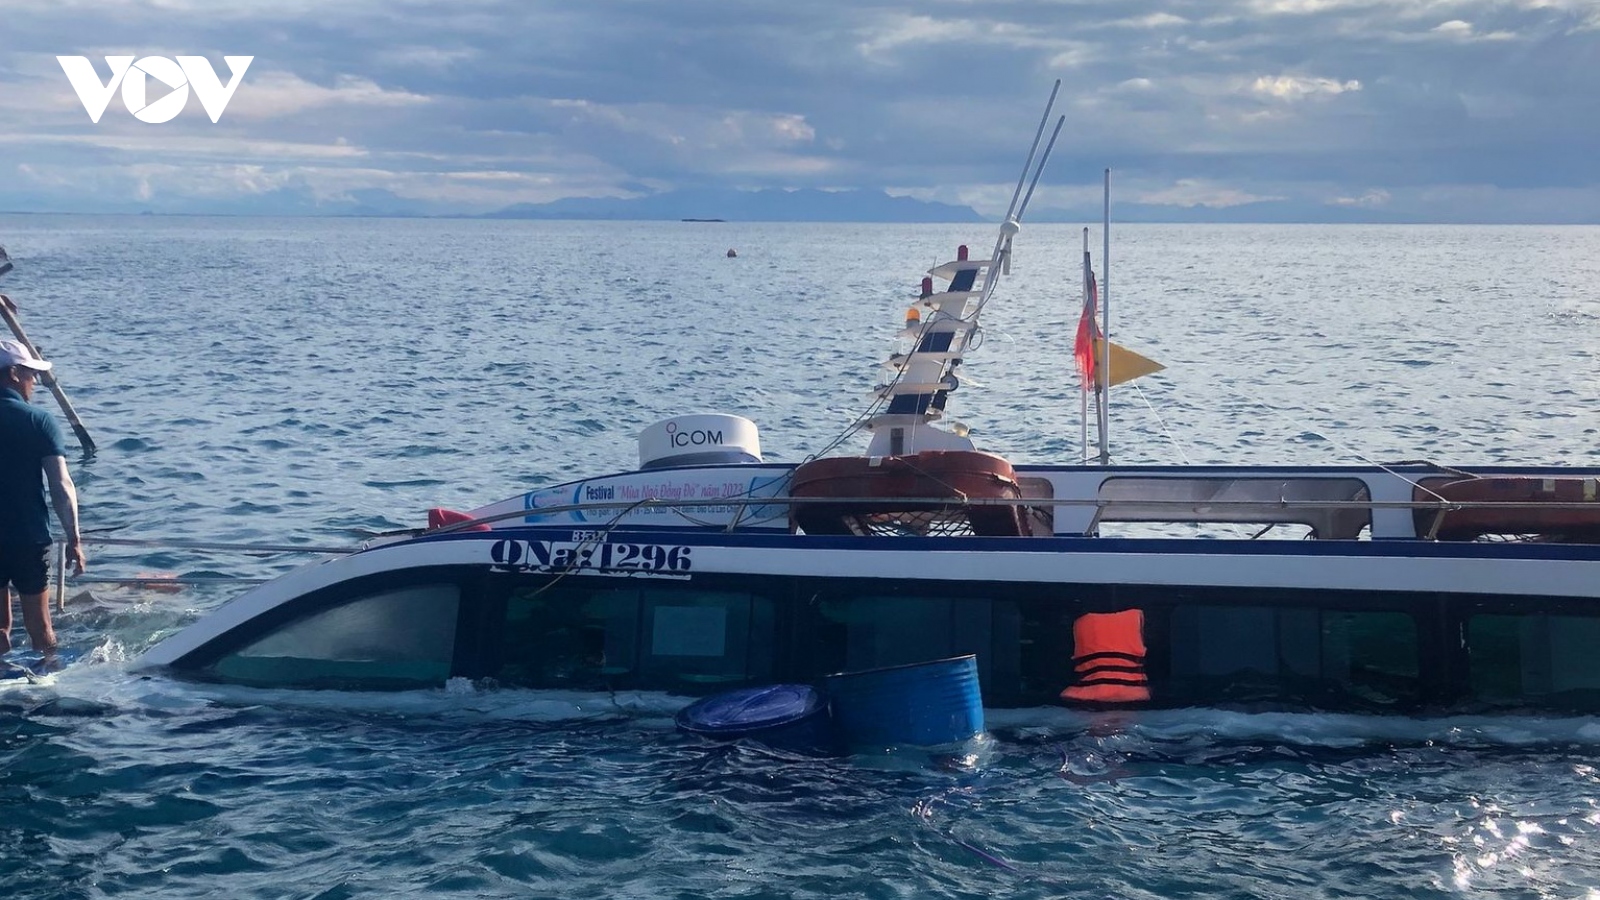 Cano du lịch gặp sự cố kỹ thuật bị chìm trên vùng biển Cù Lao Chàm, Hội An